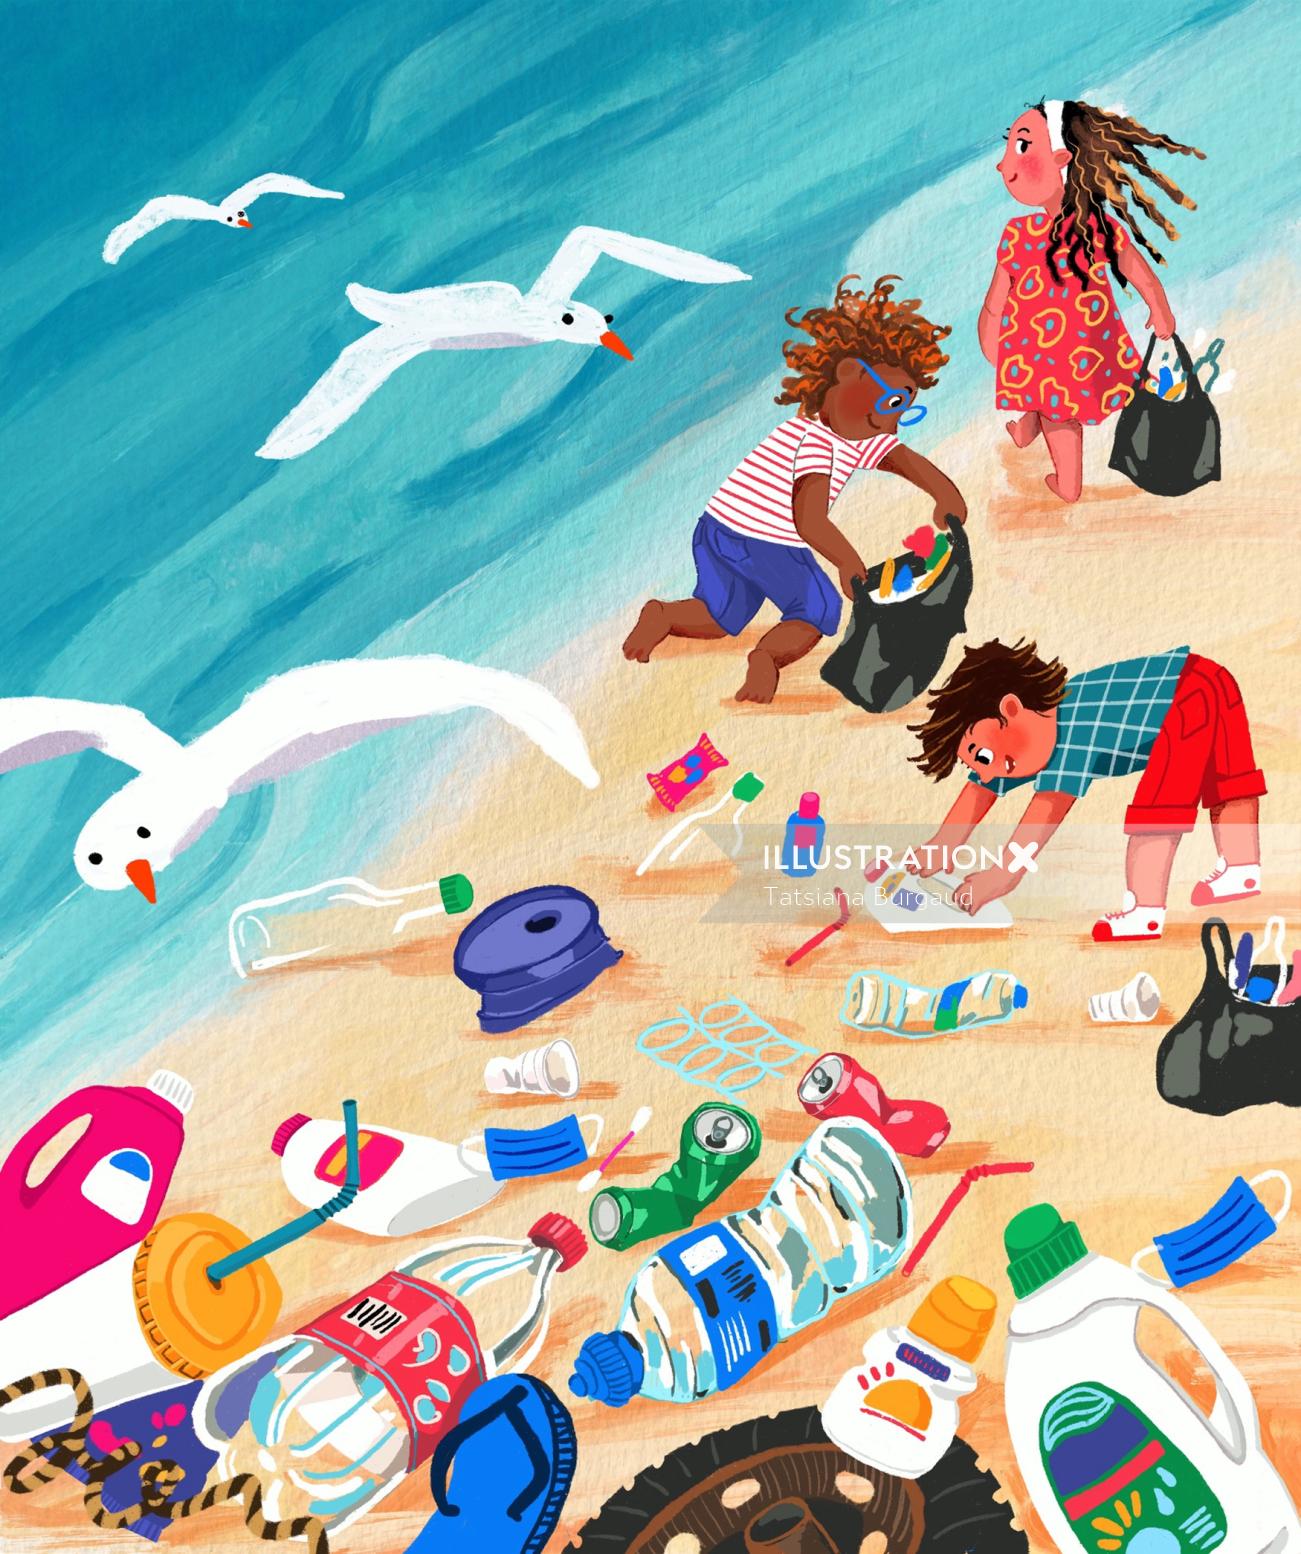 Children cleaning plastic waste in beach